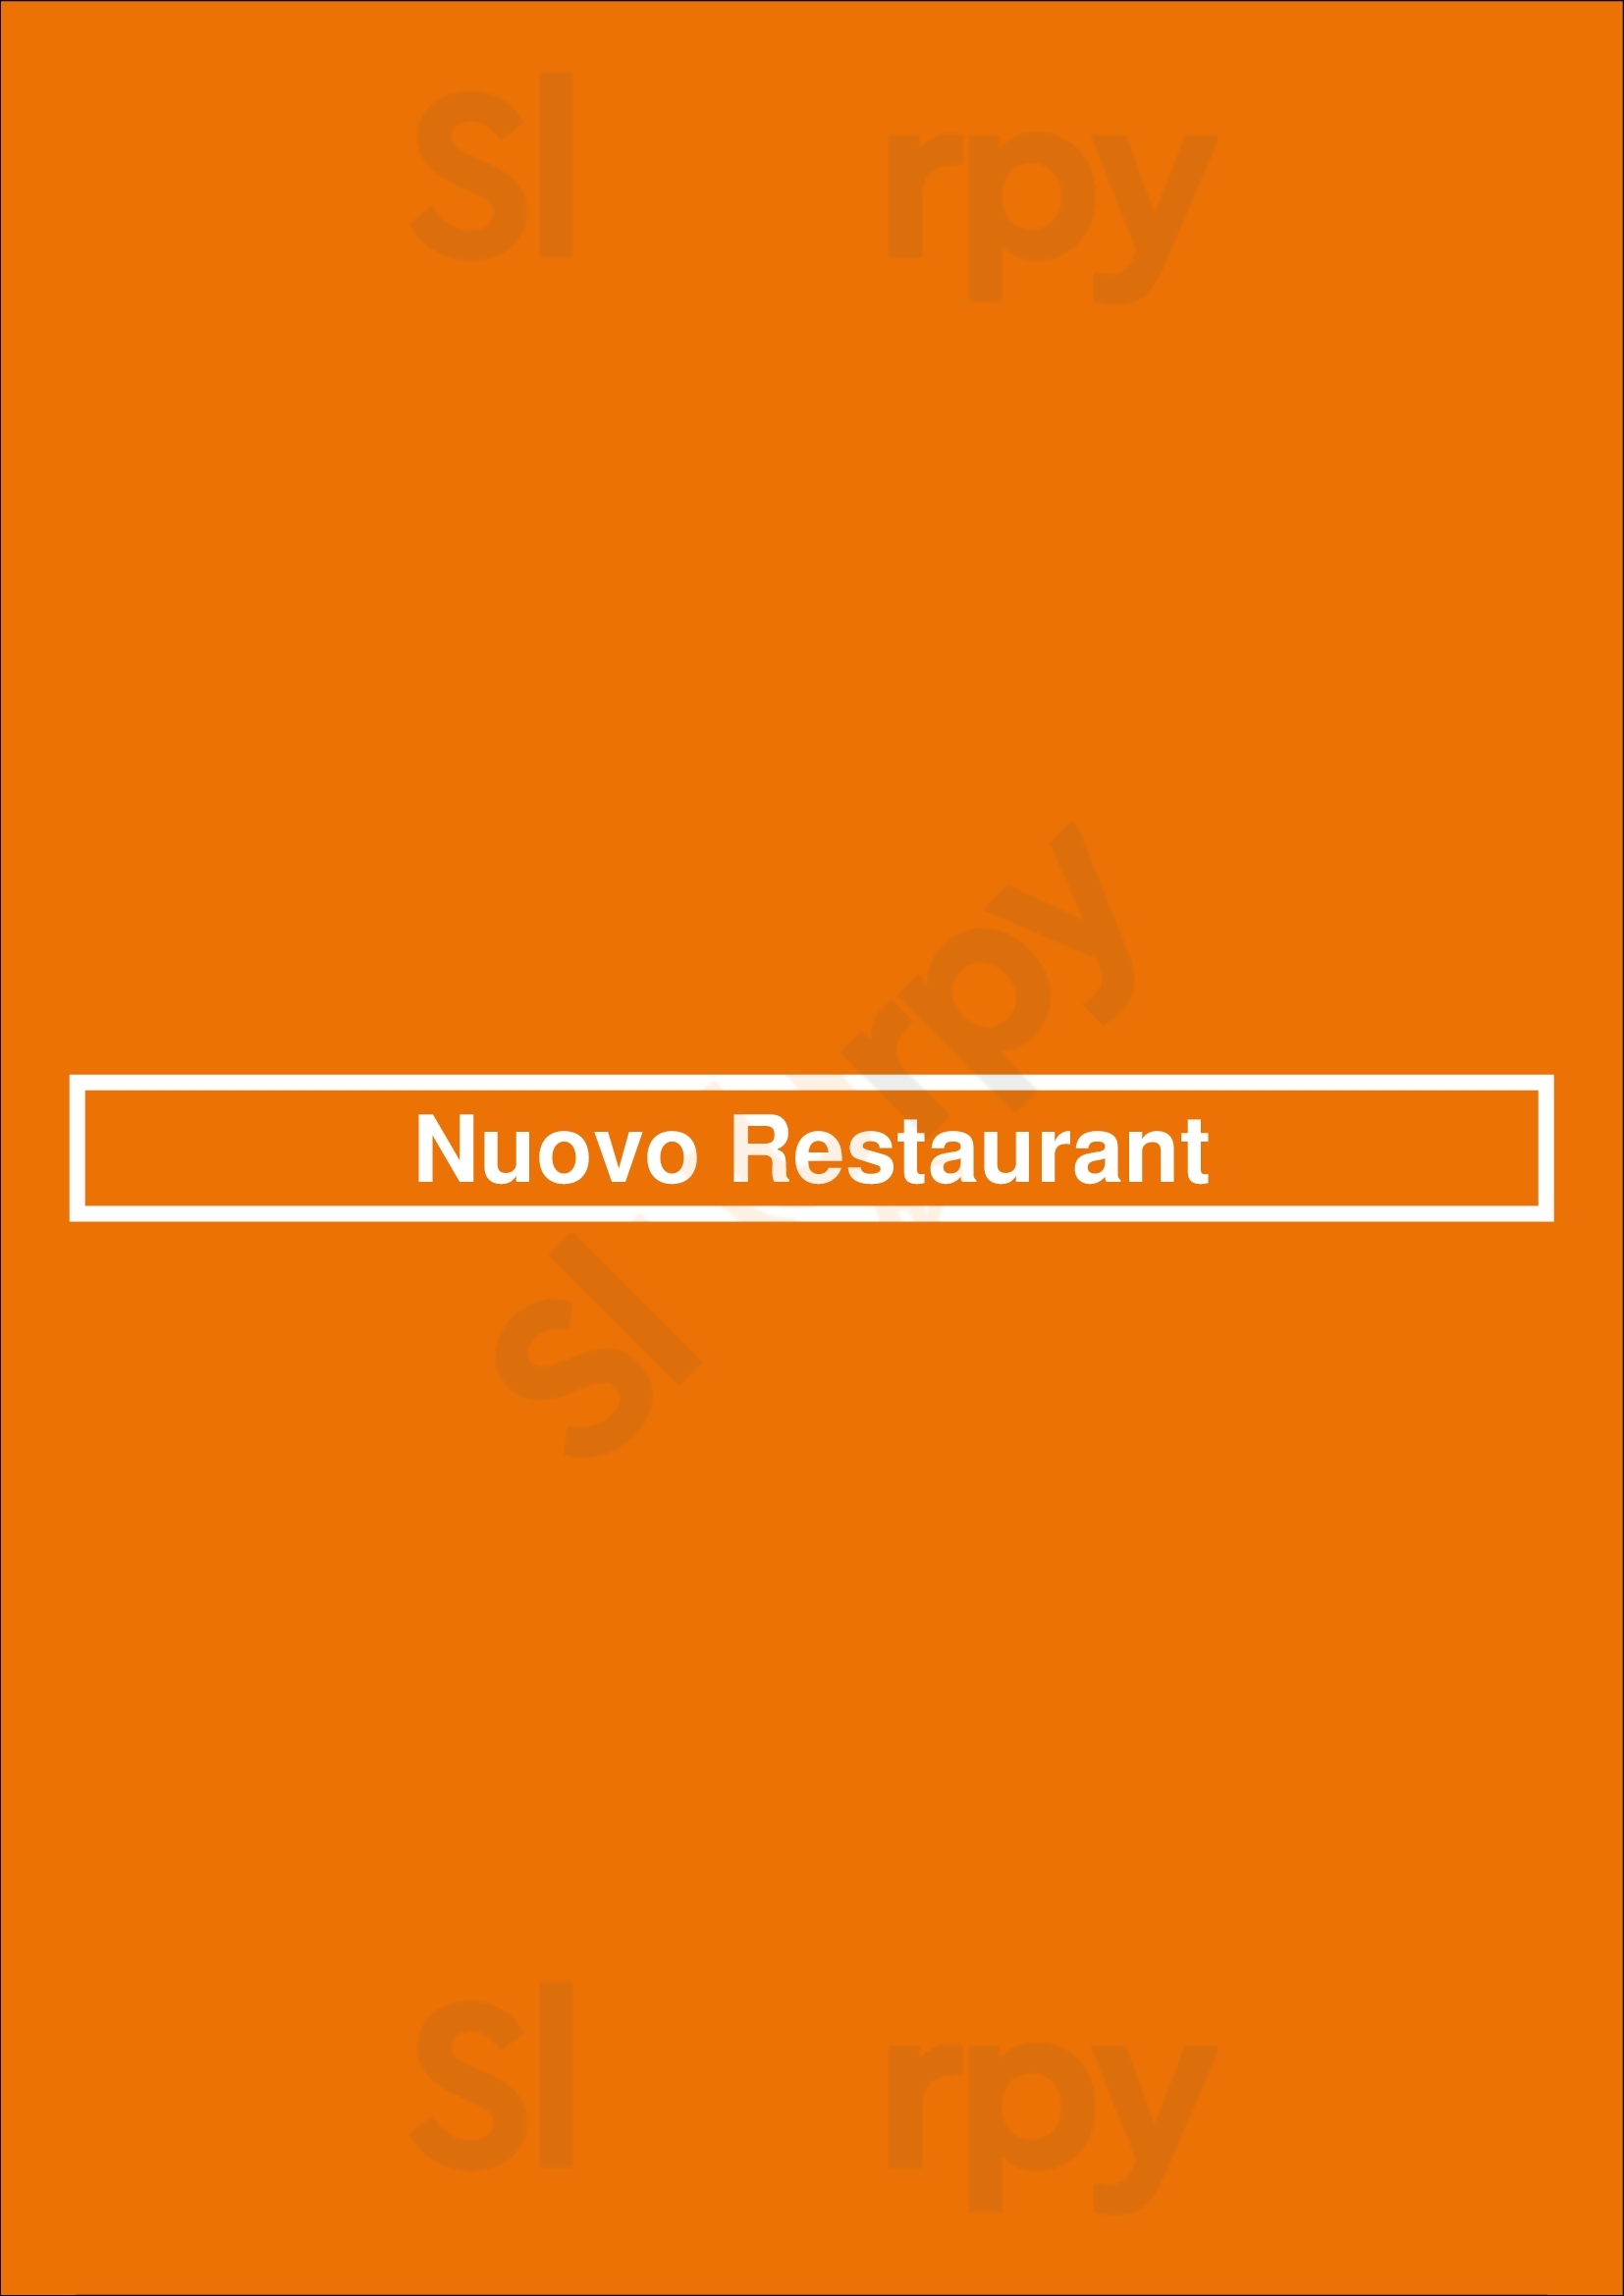 Nuovo Restaurant Worcester Menu - 1